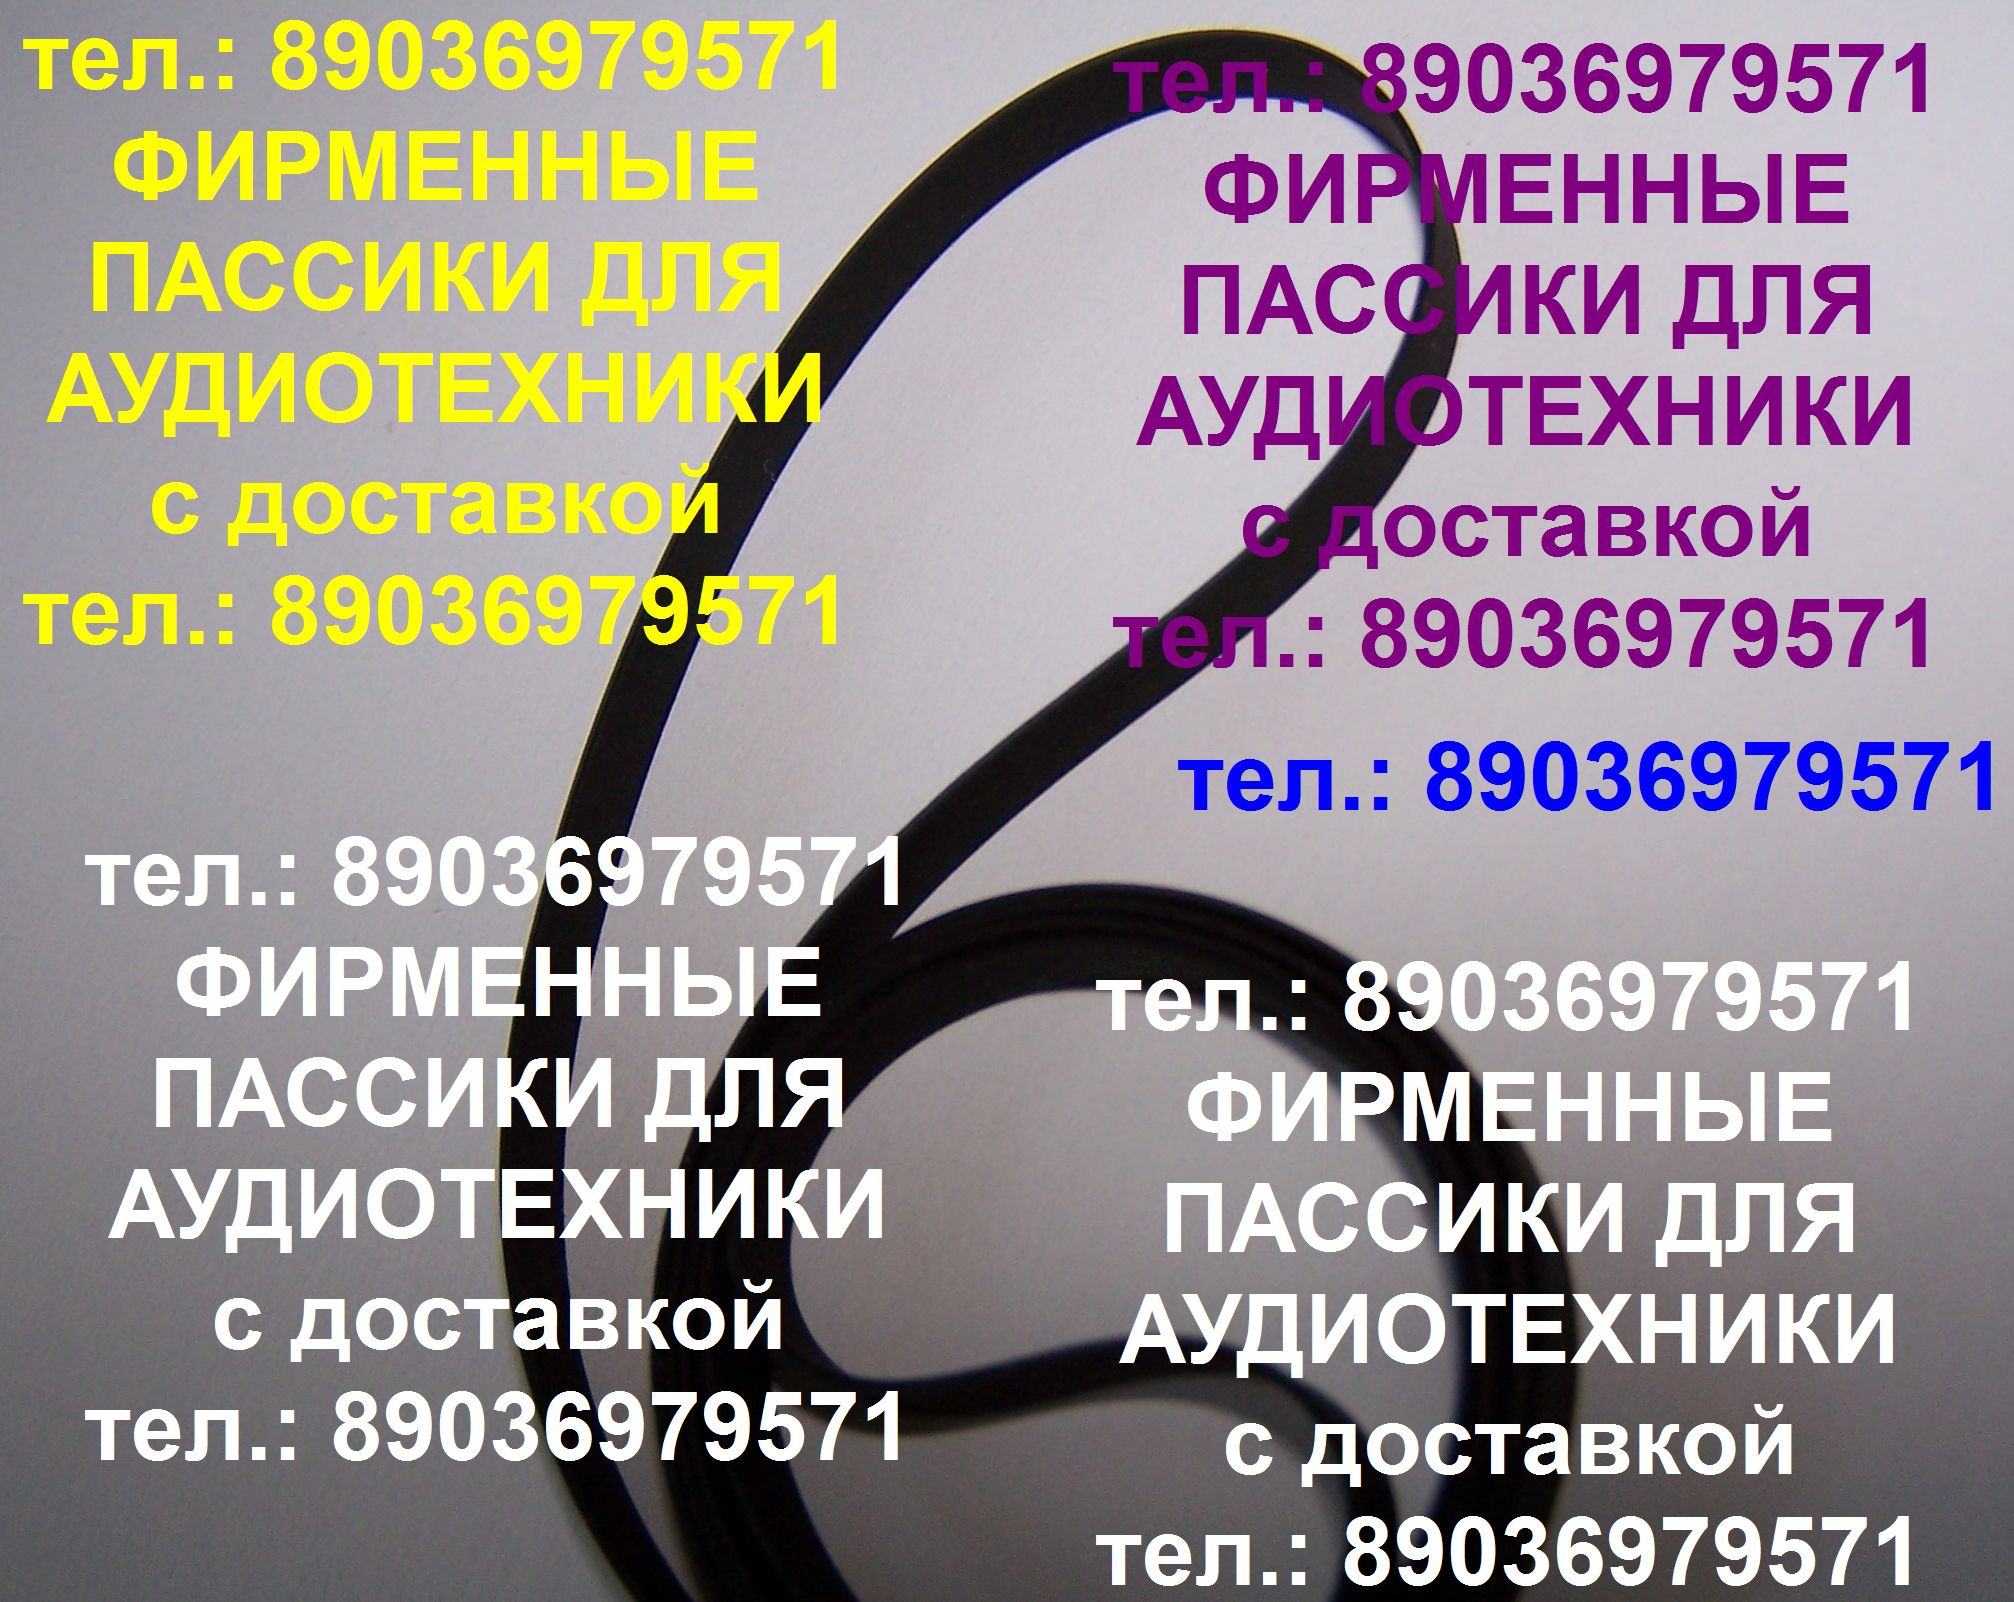 Тел.: 89036979571. С отправкой по России и зарубежью новый фирменный японский пассик для Sharp RP-1122 (ремень пасик для винилового проигрывателя Sharp RP1122 Шарп). Тел.: 89036979571. Тел.: 89036979571. Пассик для проигрывателя винила Sharp RP-1122. Тел.